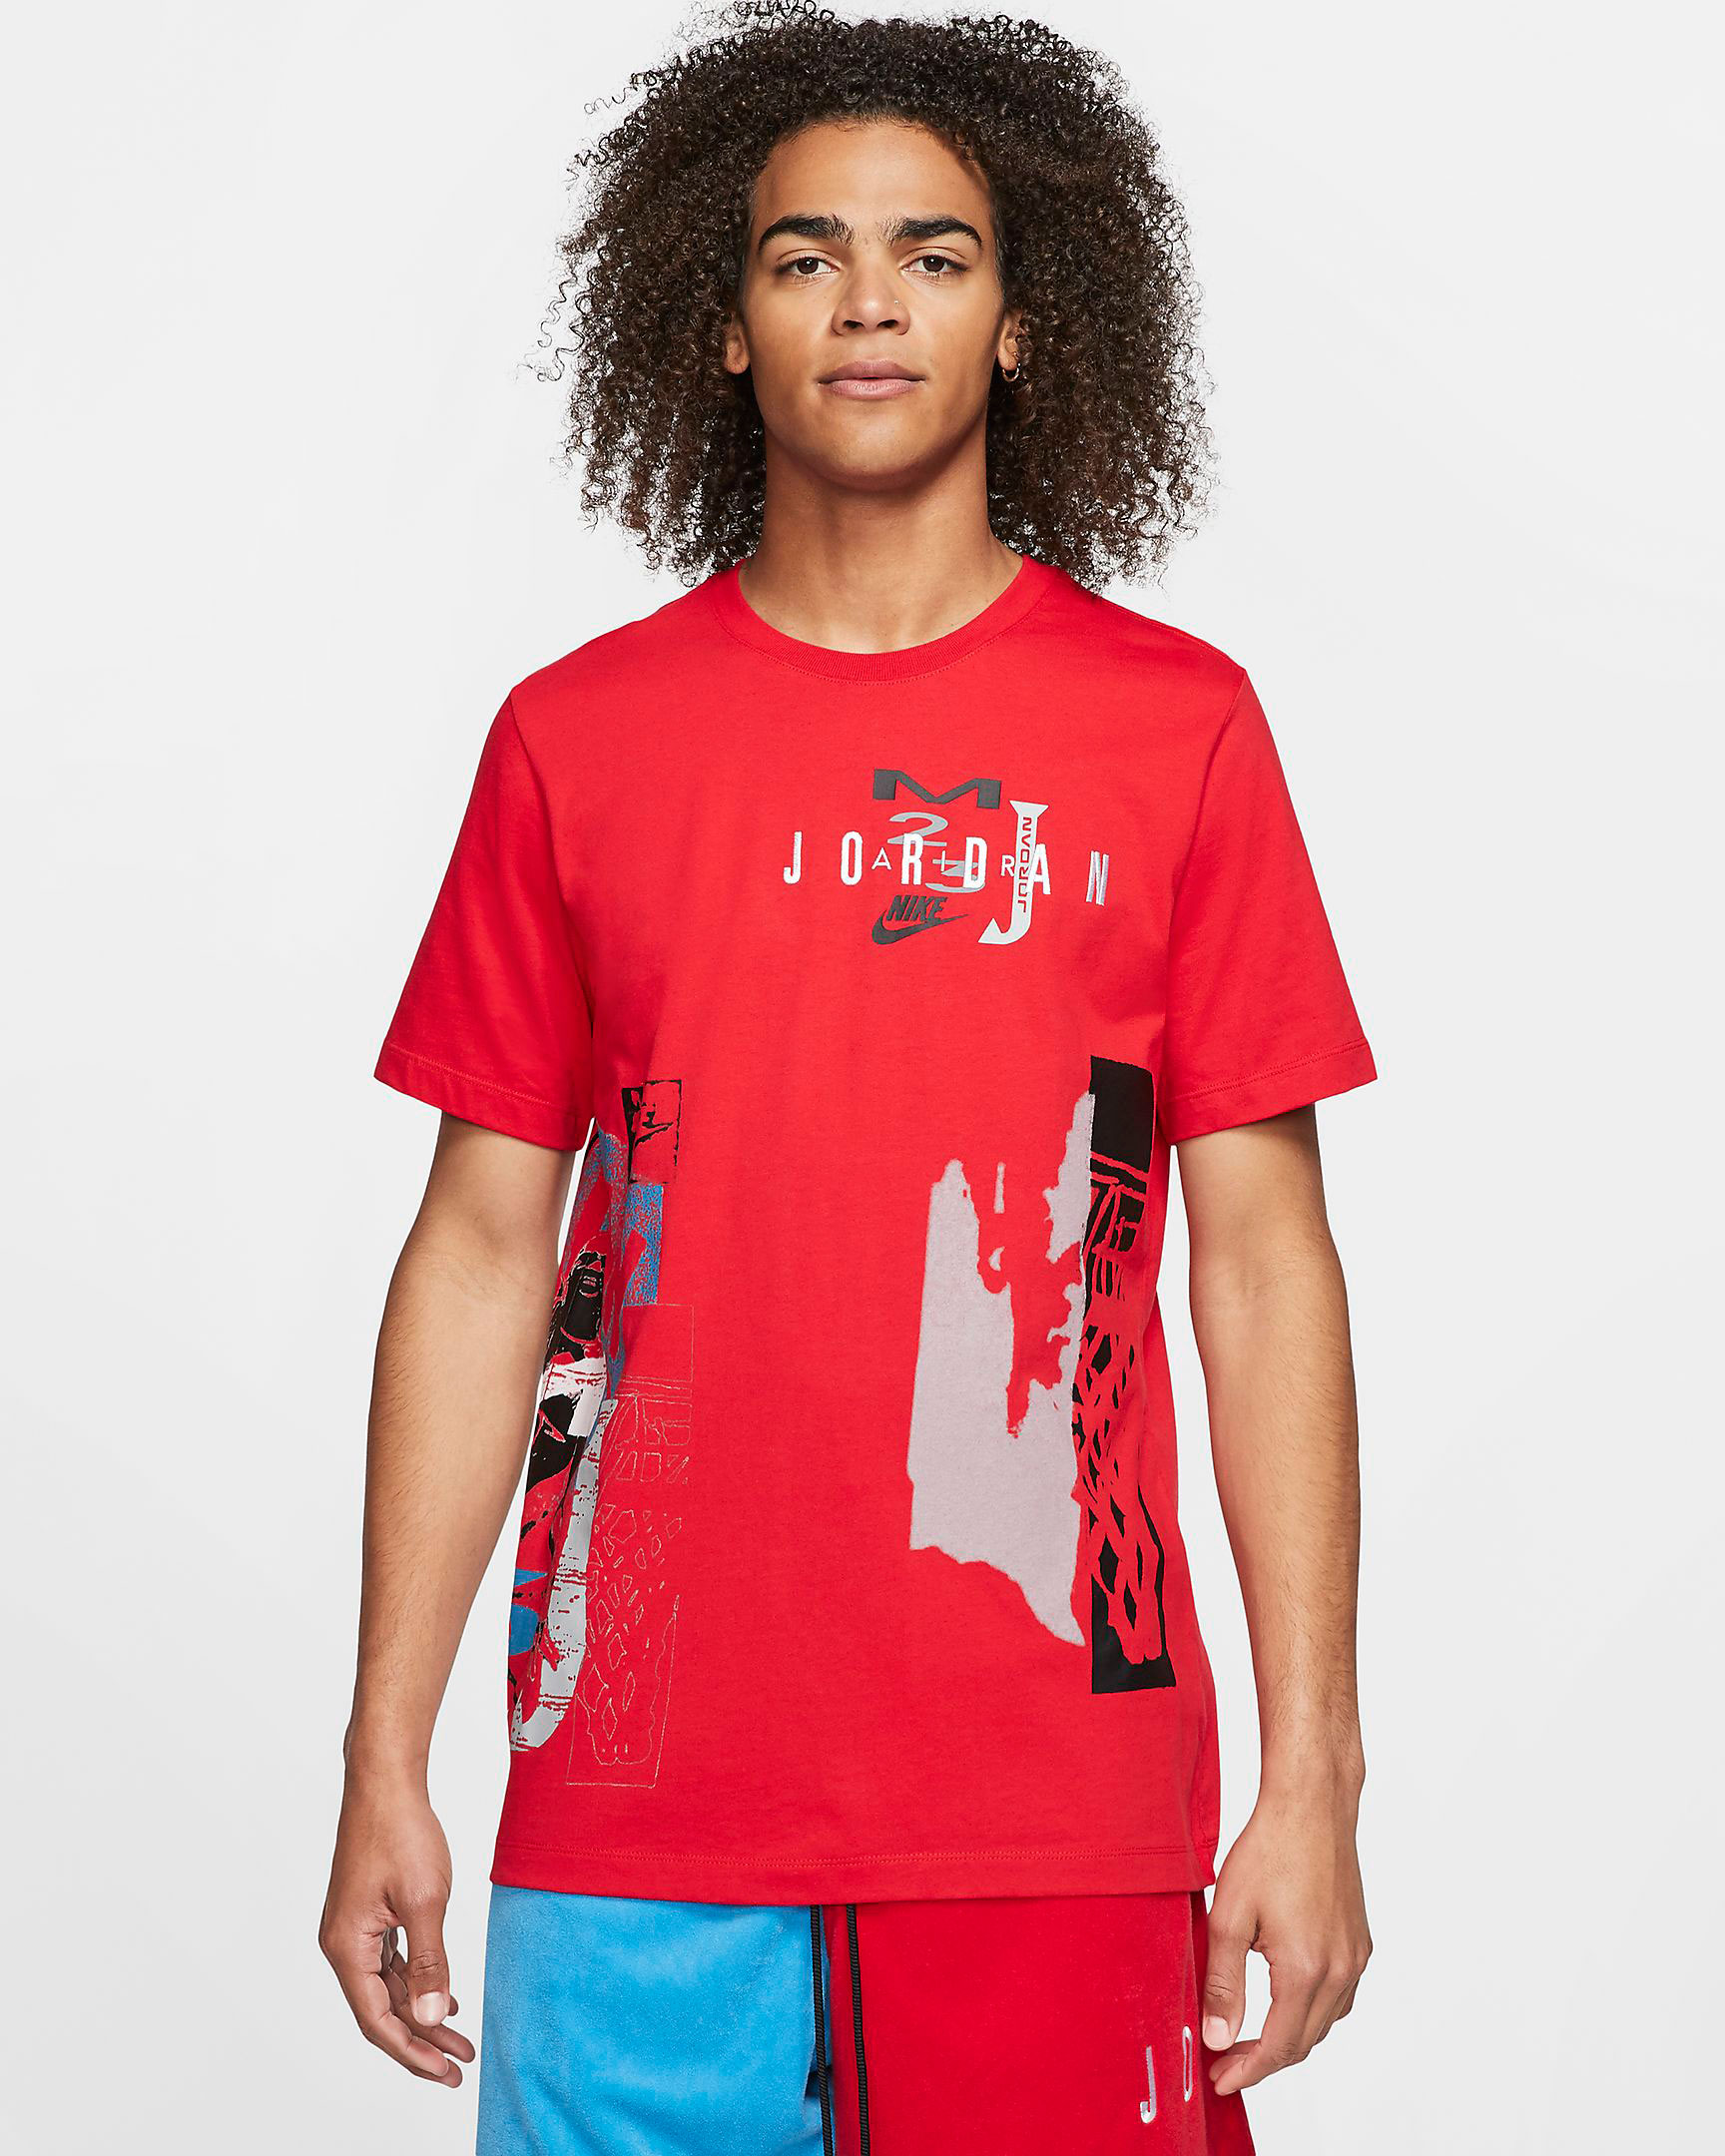 jordan-sport-dna-shirt-red-grey-blue-1